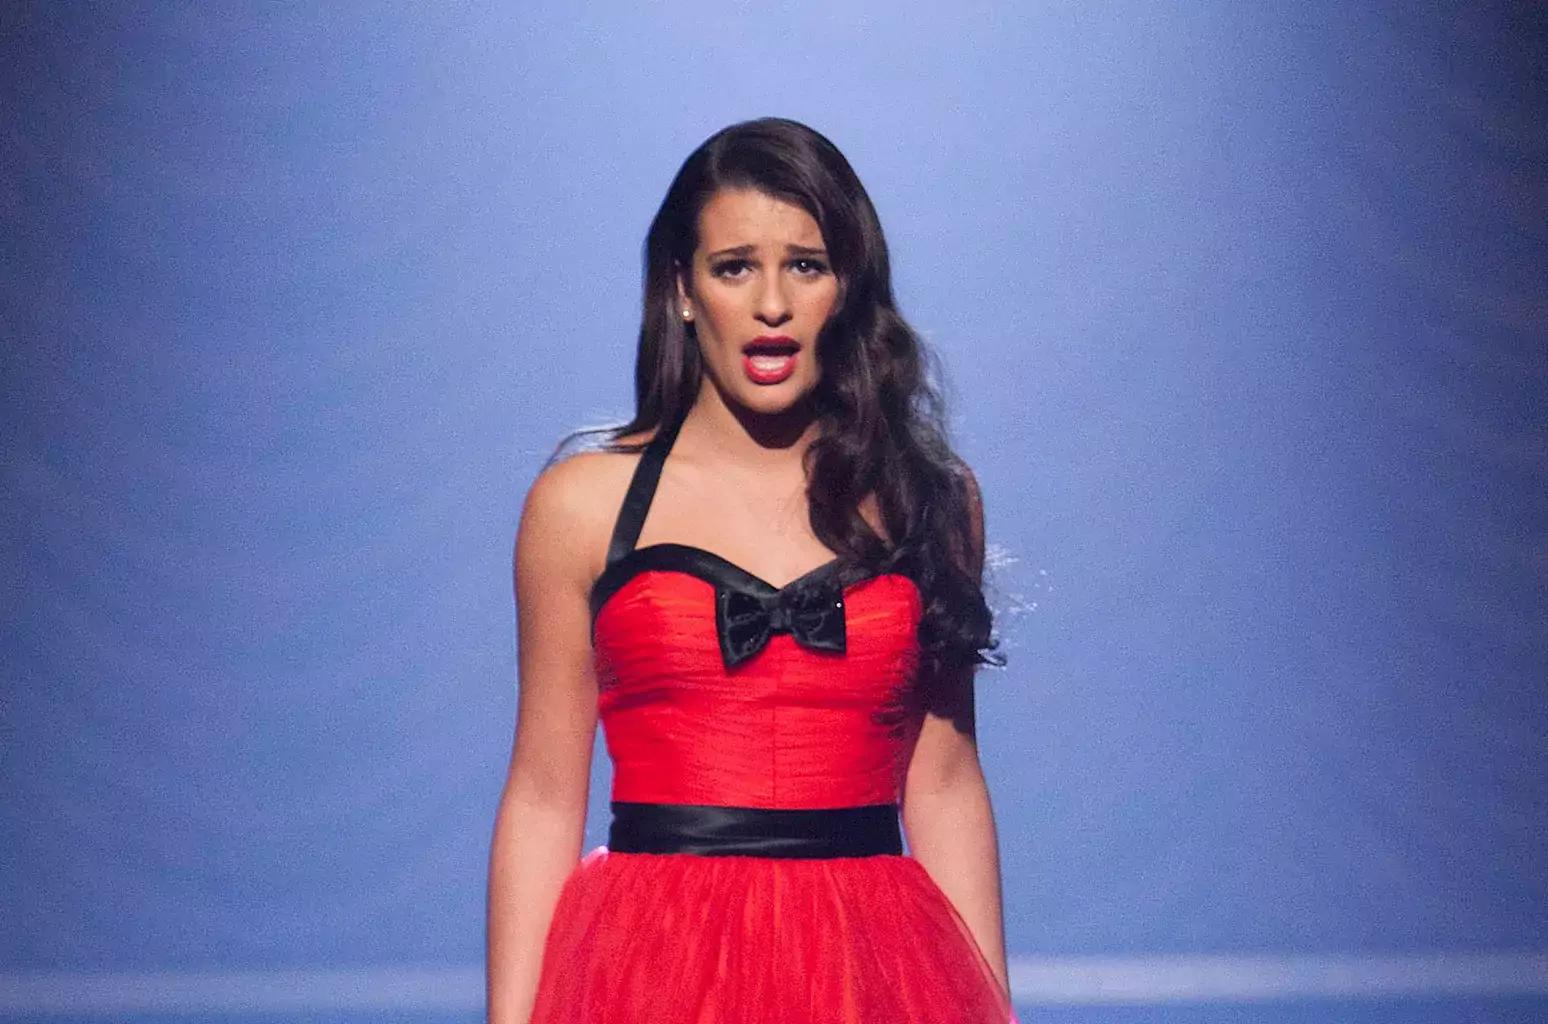 Rachel from Glee